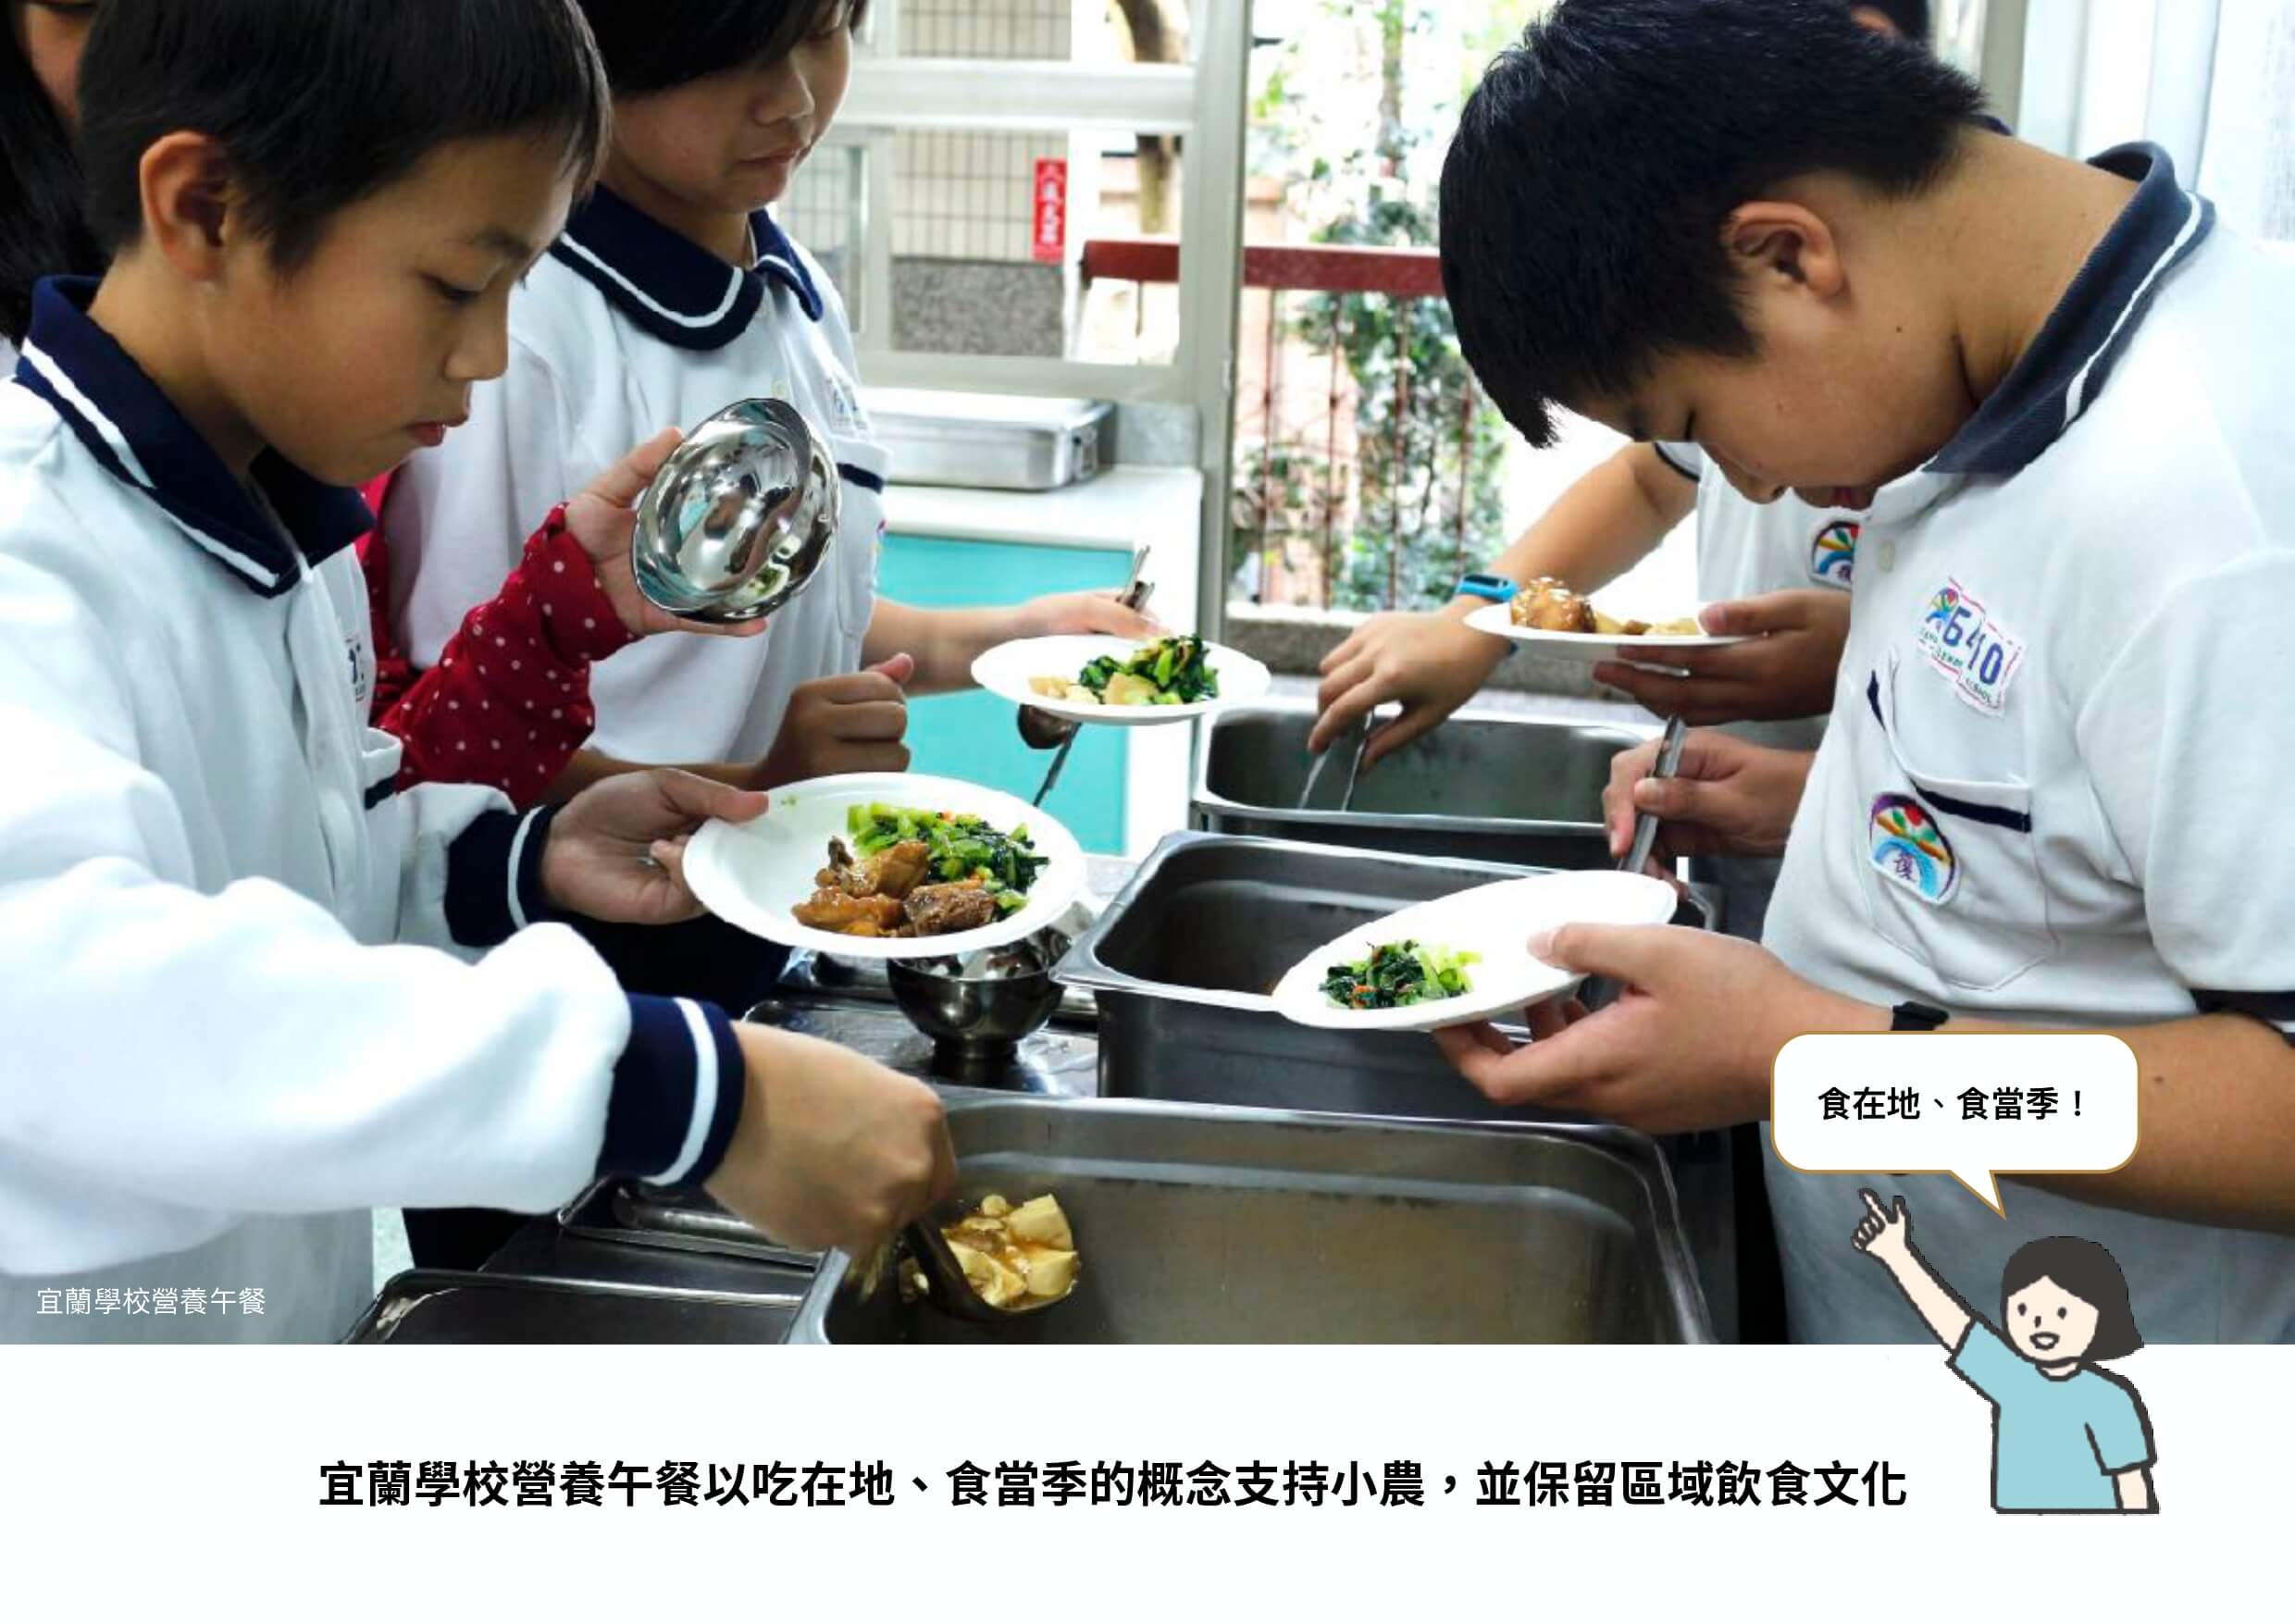 宜蘭學校的學生在營養午餐時間打菜到碗盤上